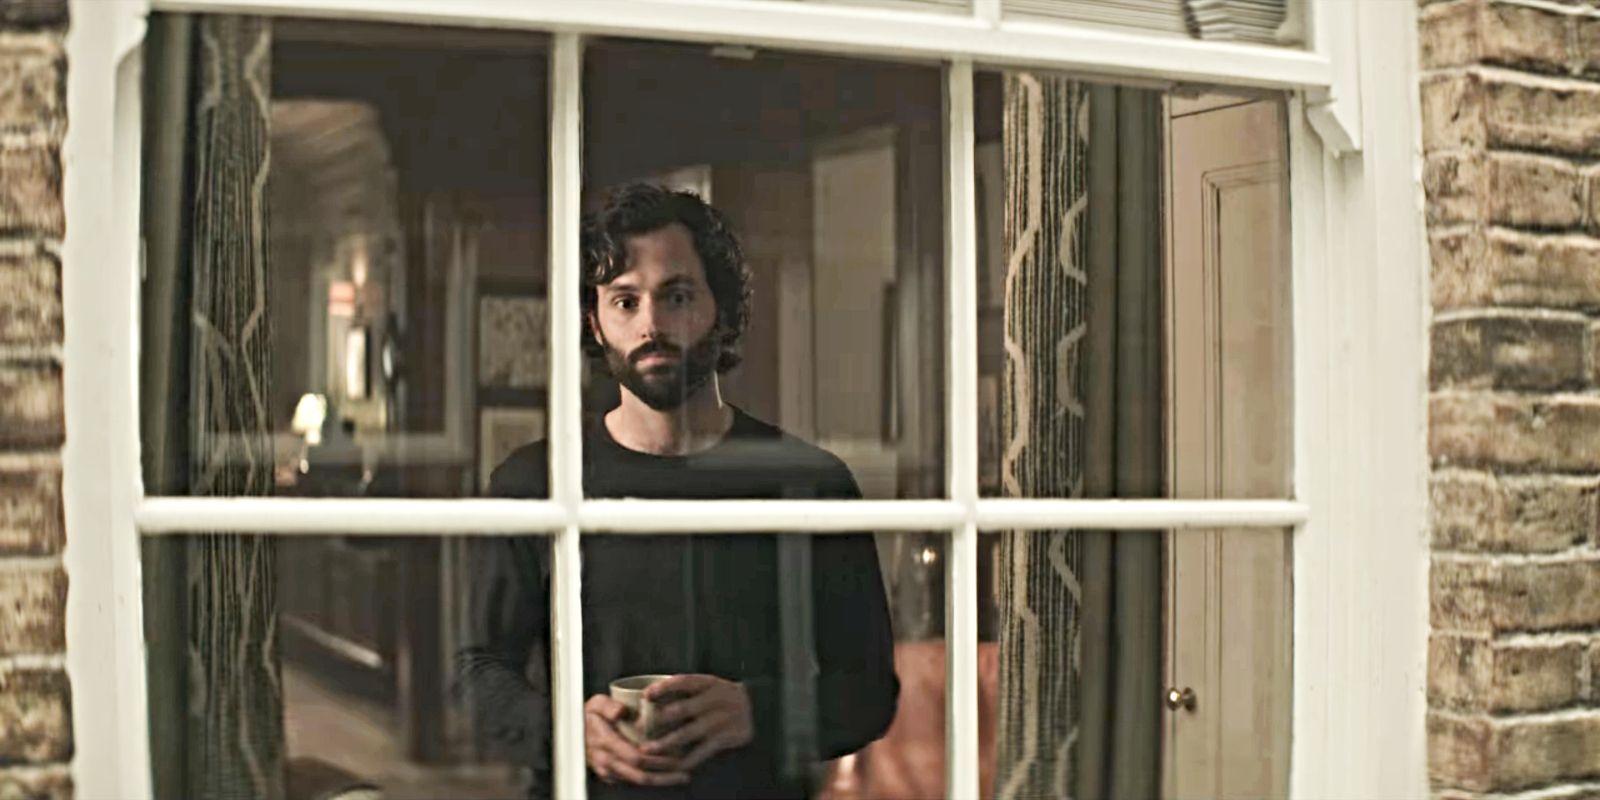 Penn Badgley as Joe Goldberg at his window